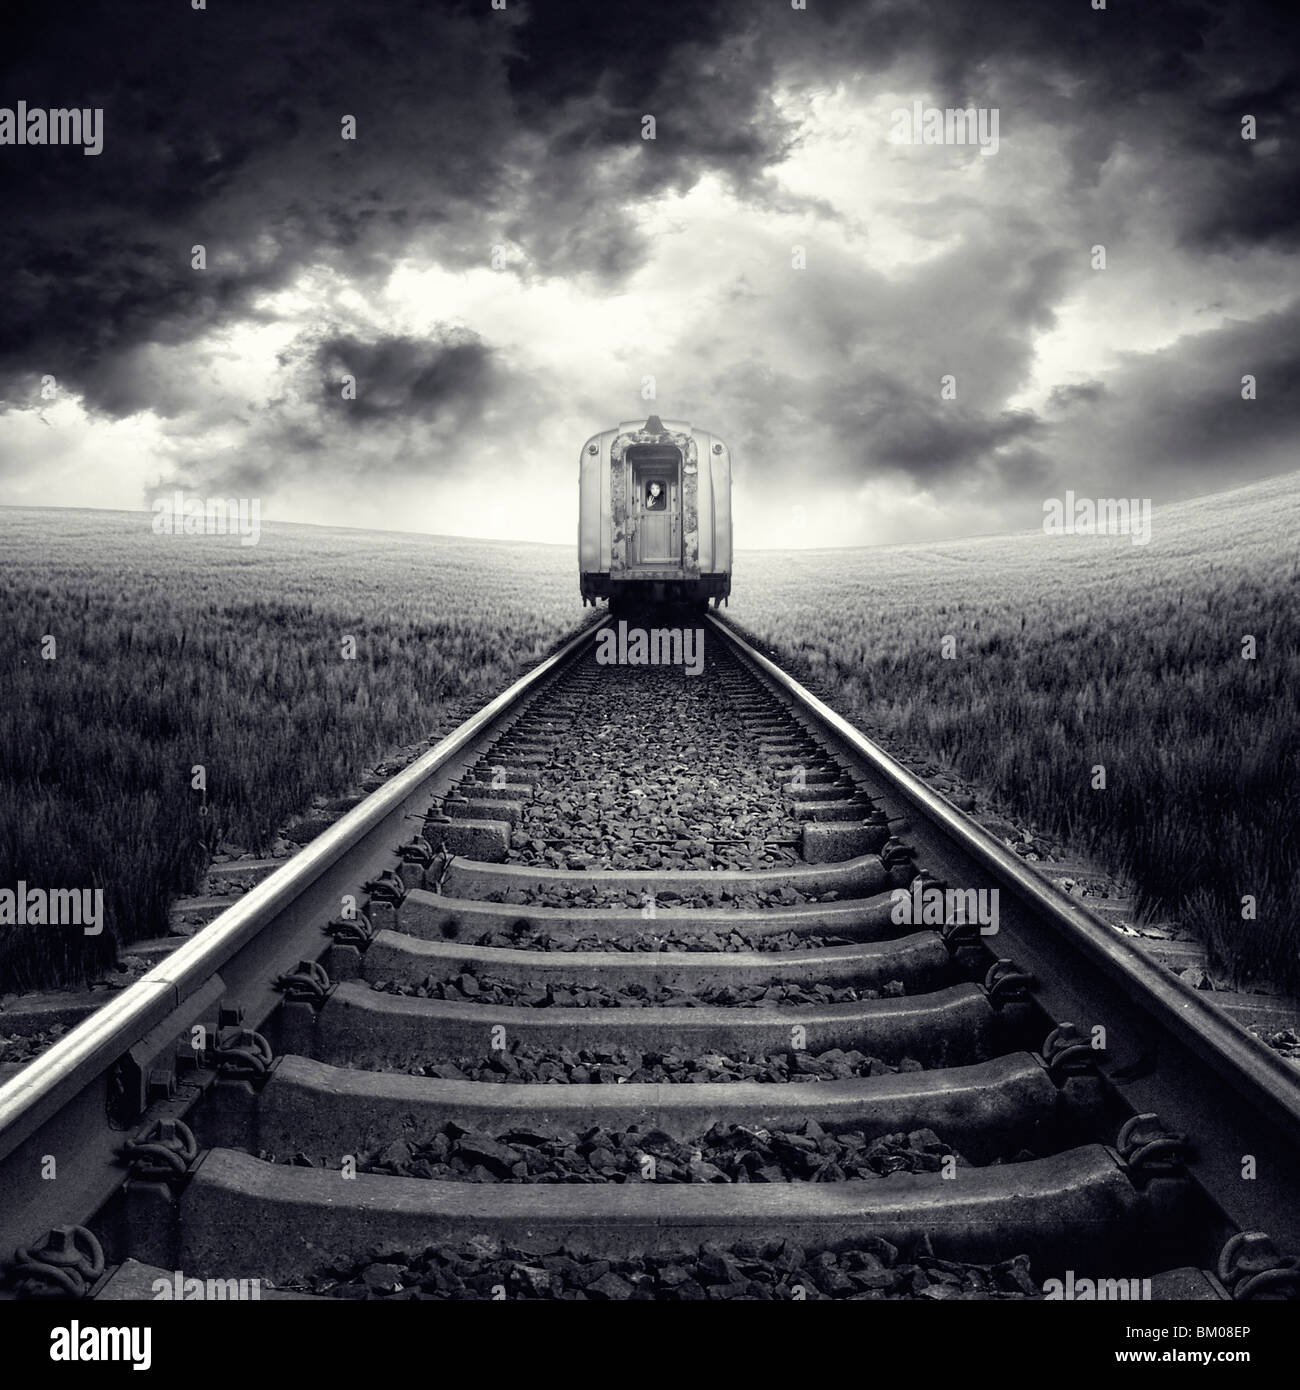 Une vue arrière d'un train sur des rails en passant par un champ de maïs avec un ciel orageux Banque D'Images